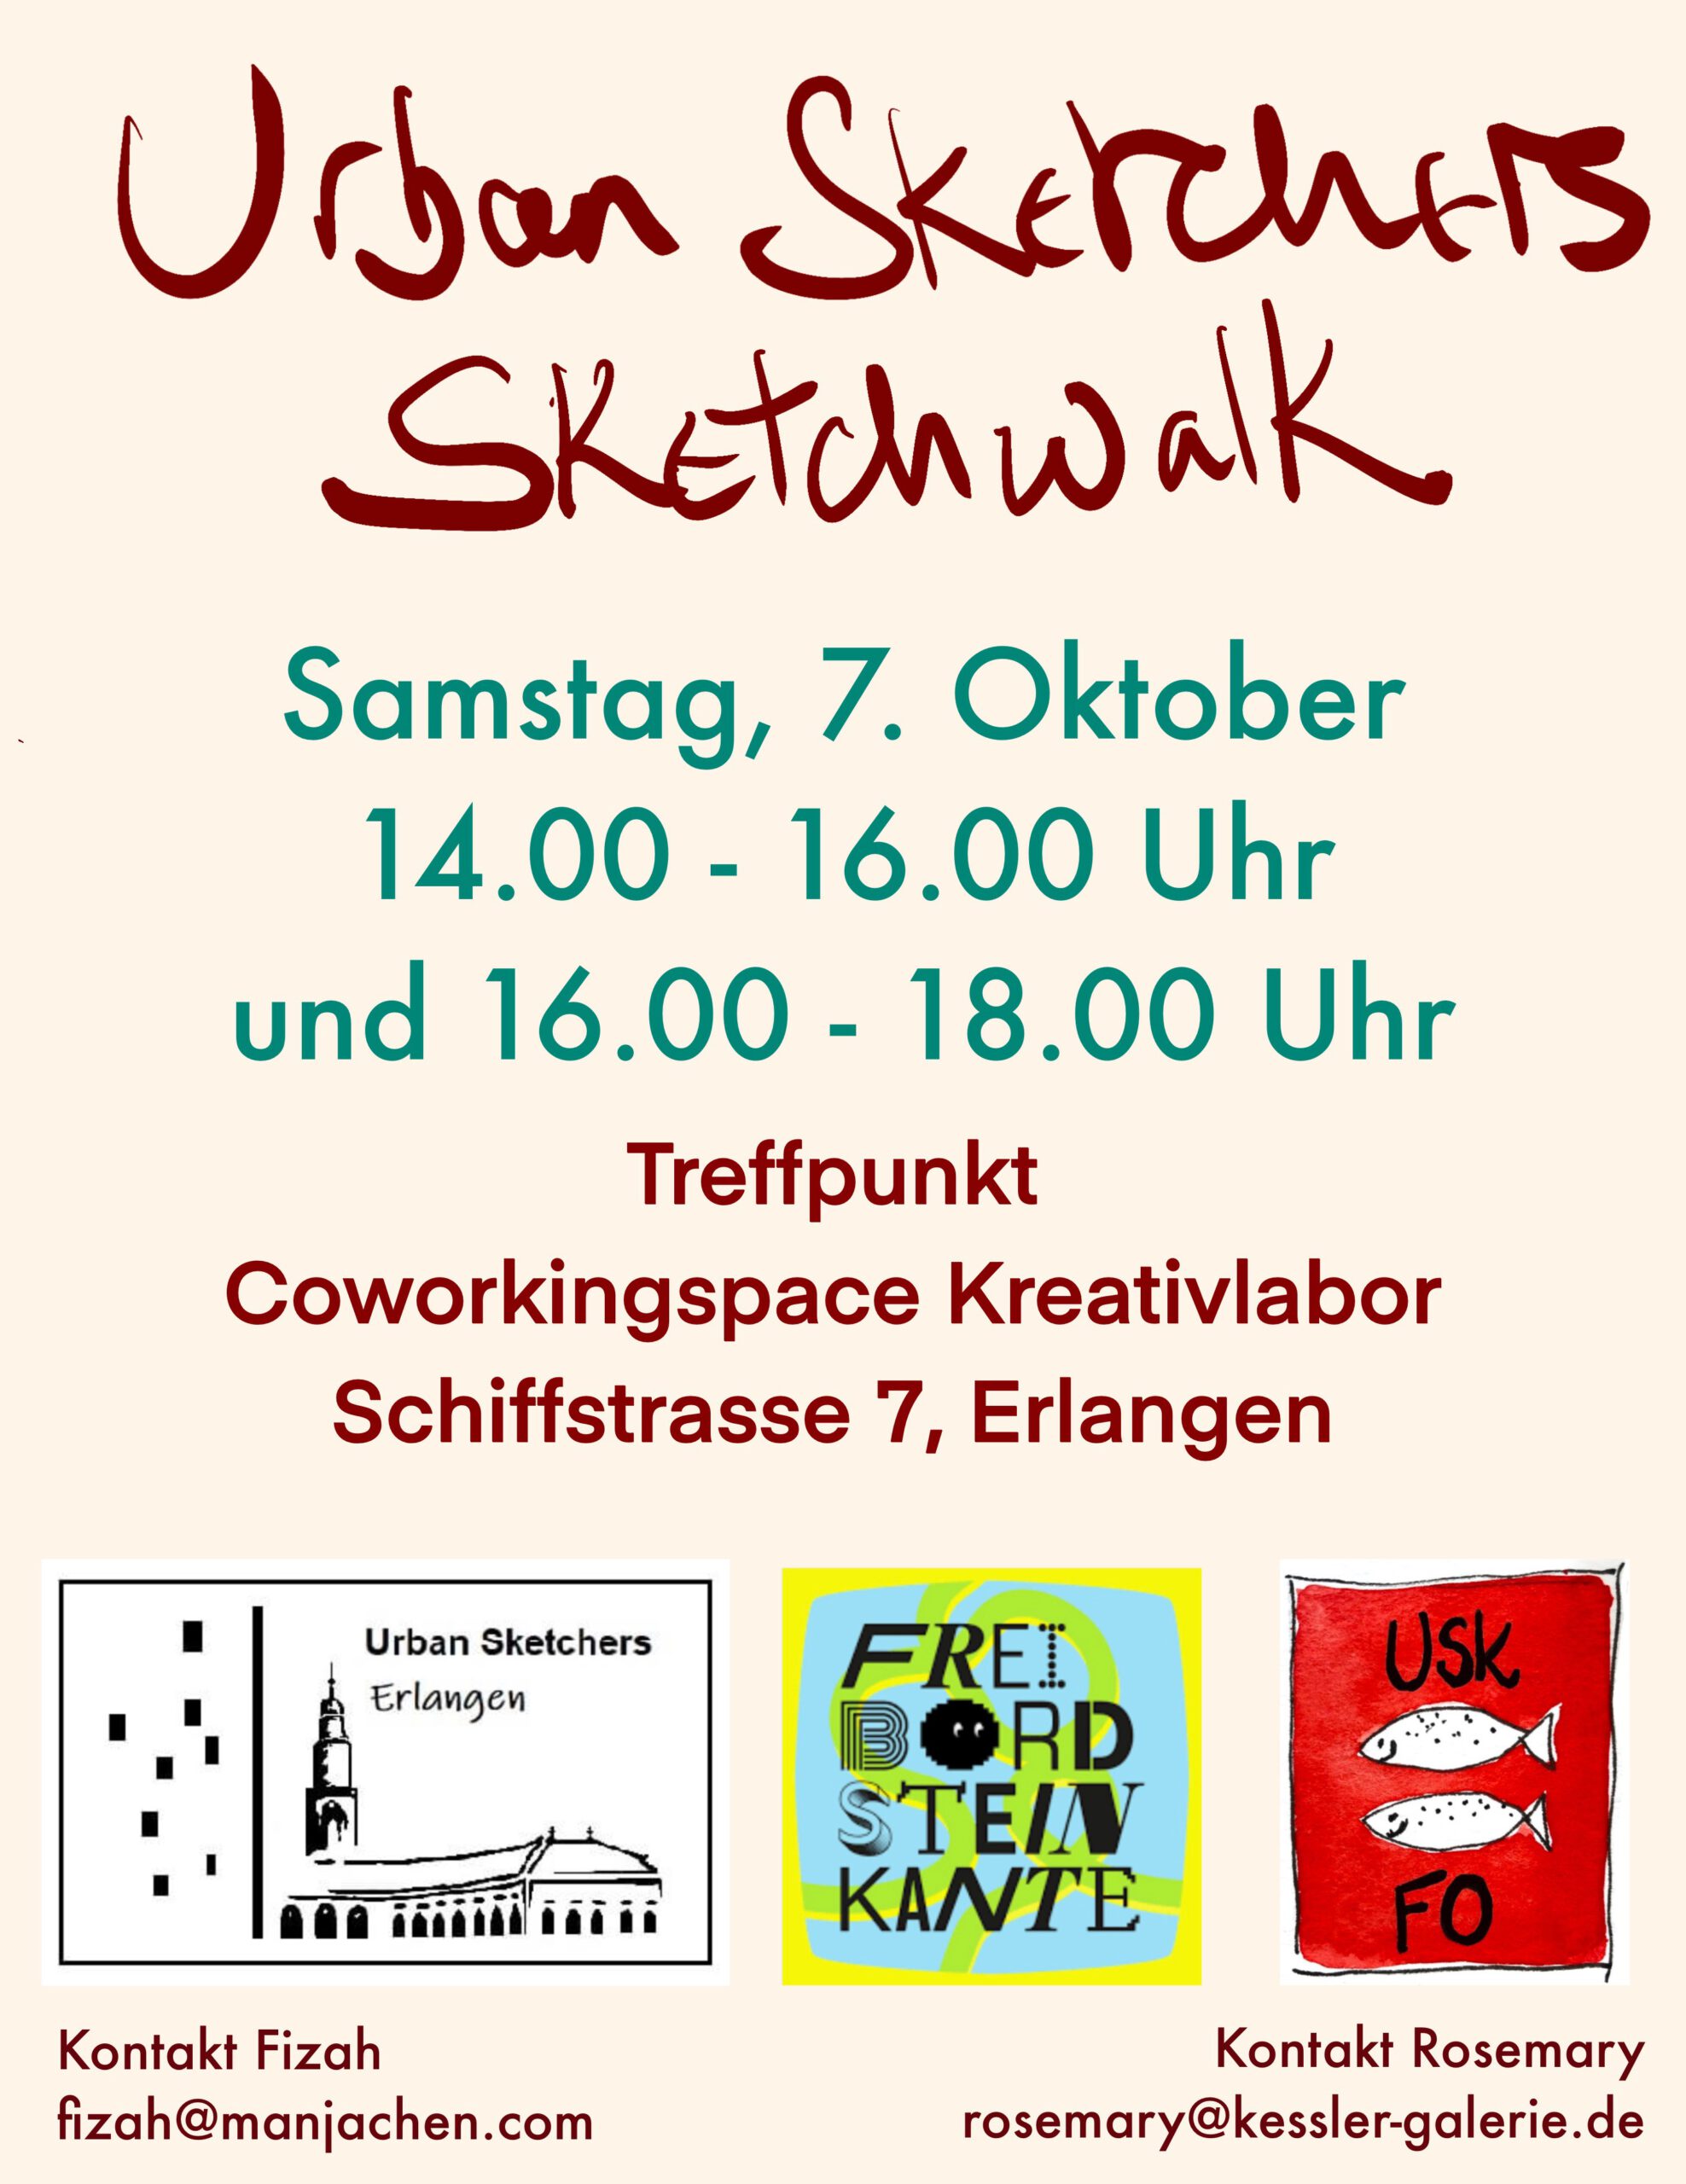 USK Forchheim Erlangen Sketchwalk